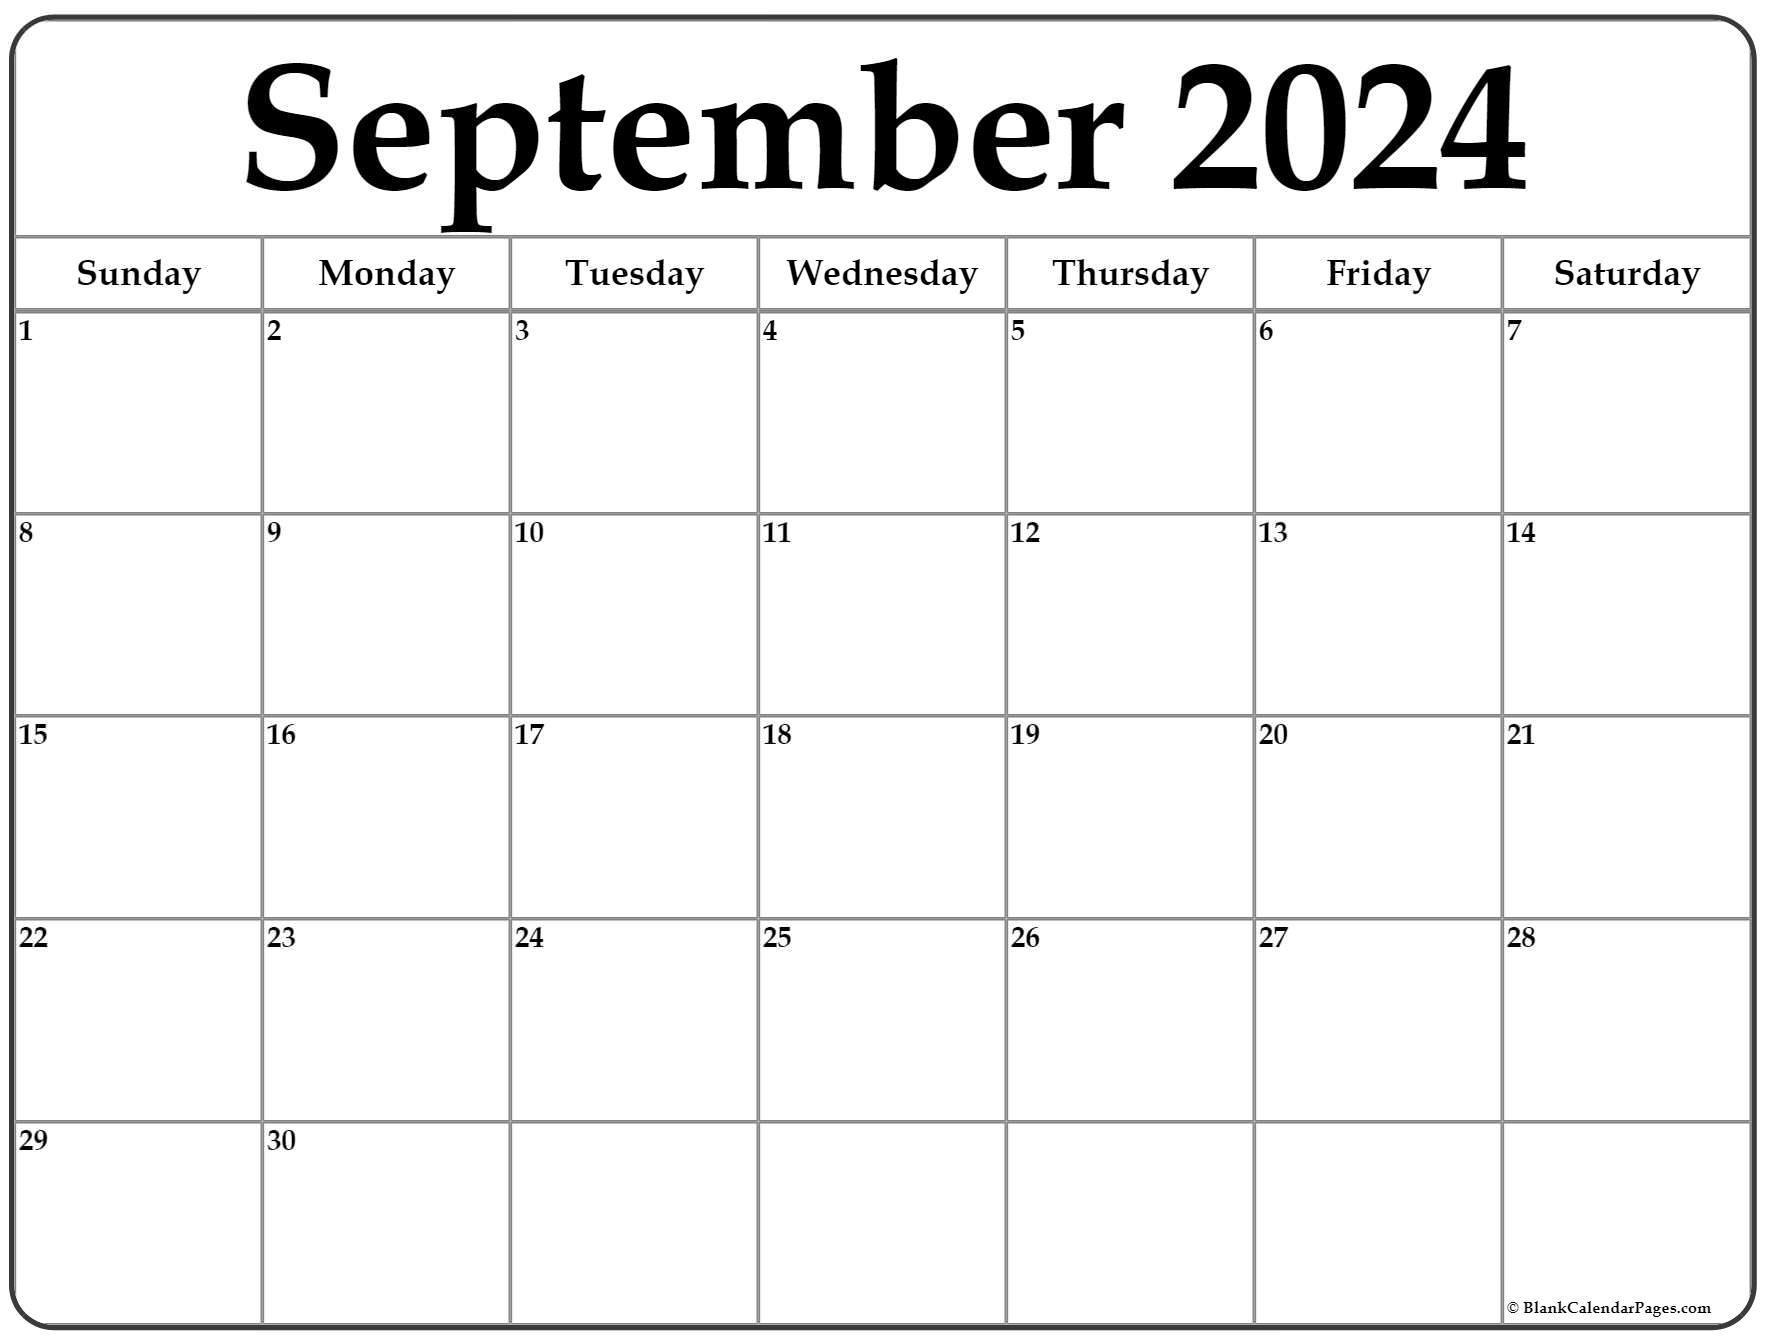 September 2022 Calendar Printable Free Hipi Info Calendars Printable Free